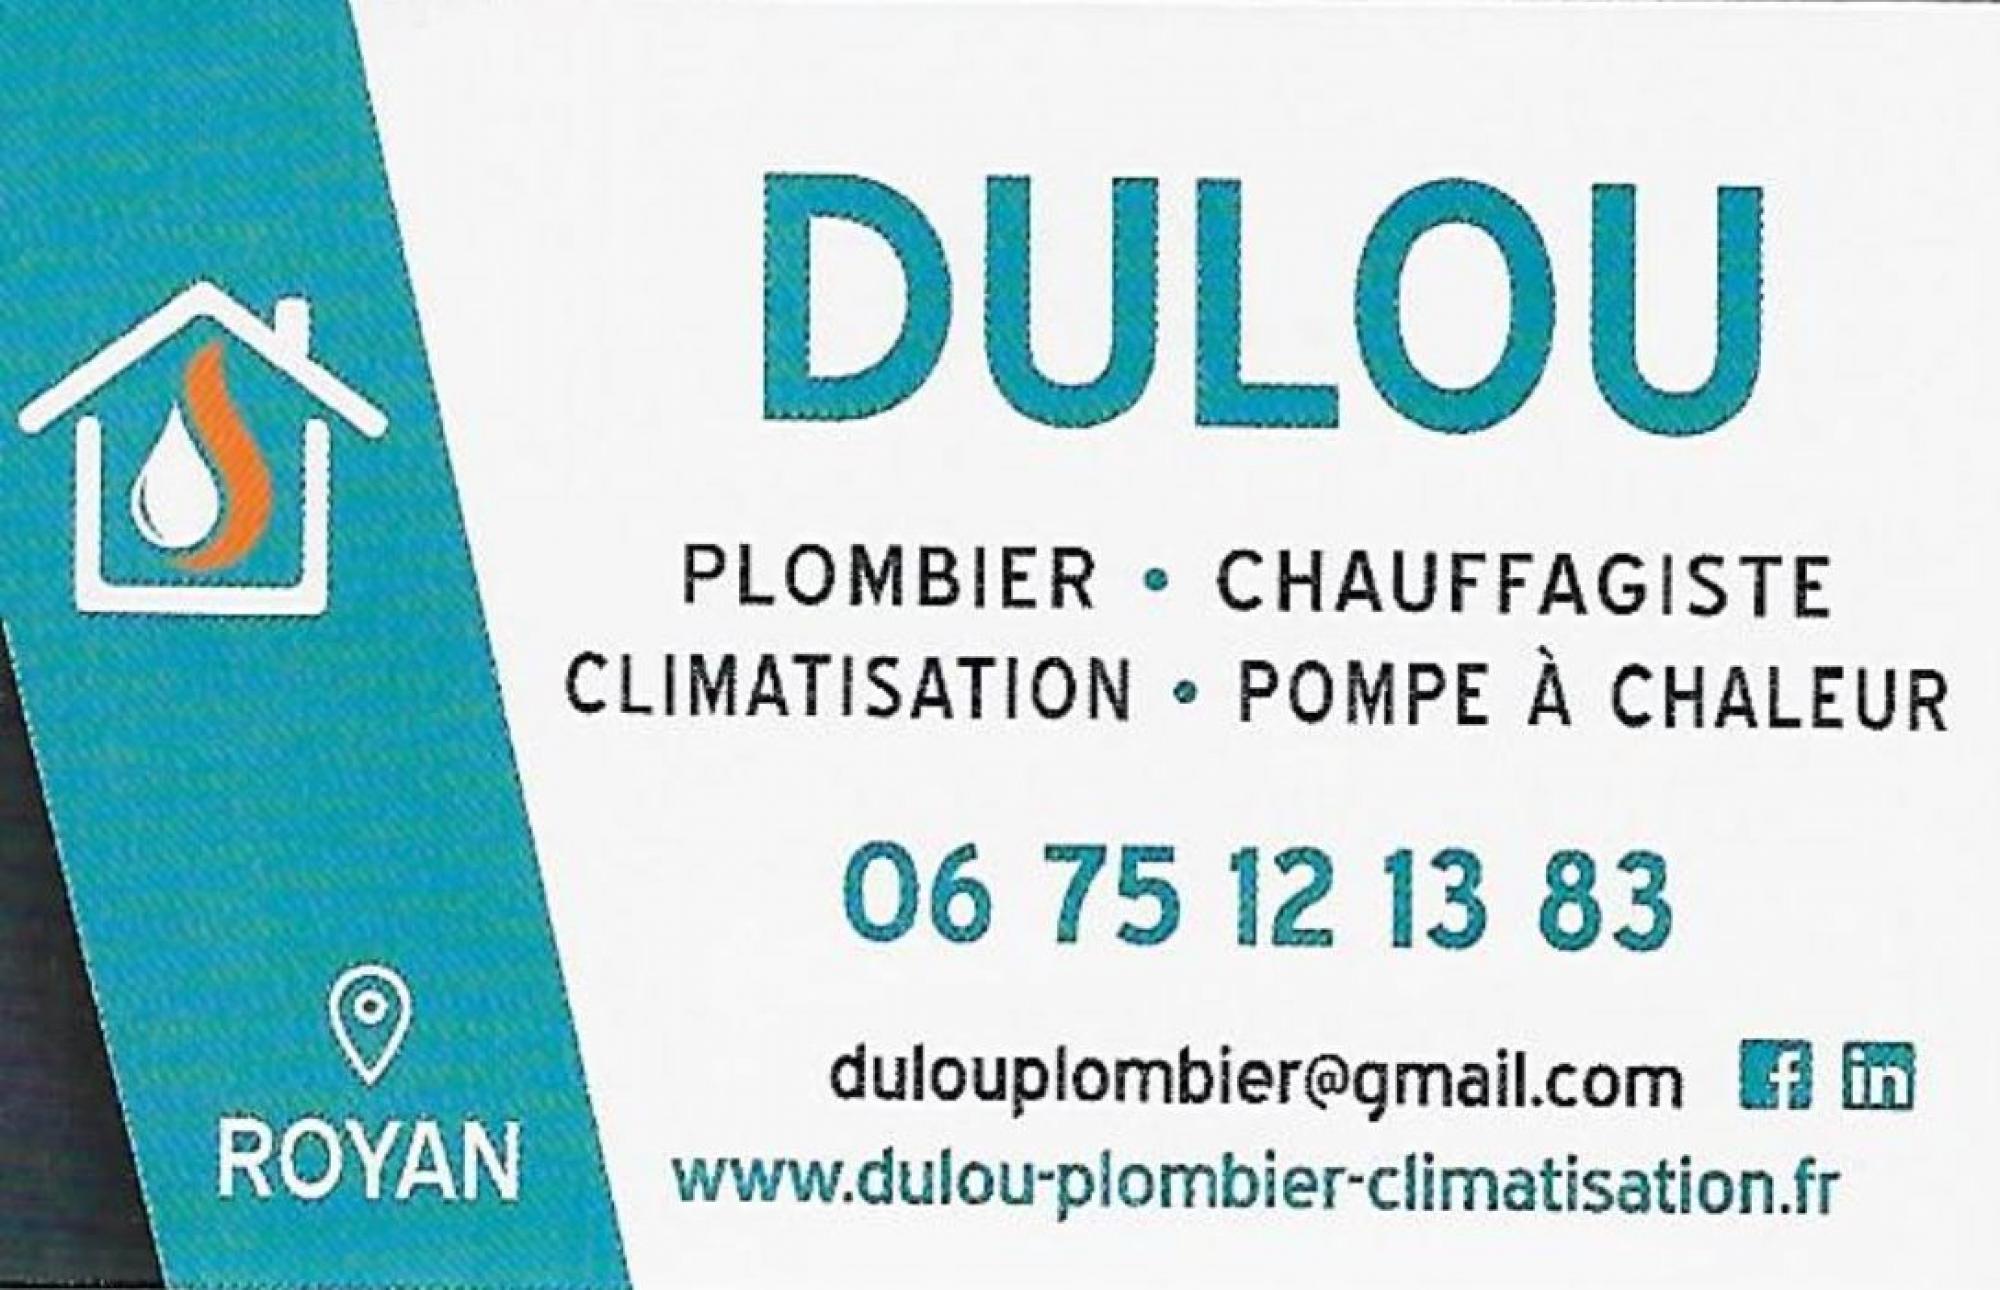 DULOU Plombier - chauffagiste - climatisation - pompe à chaleur 